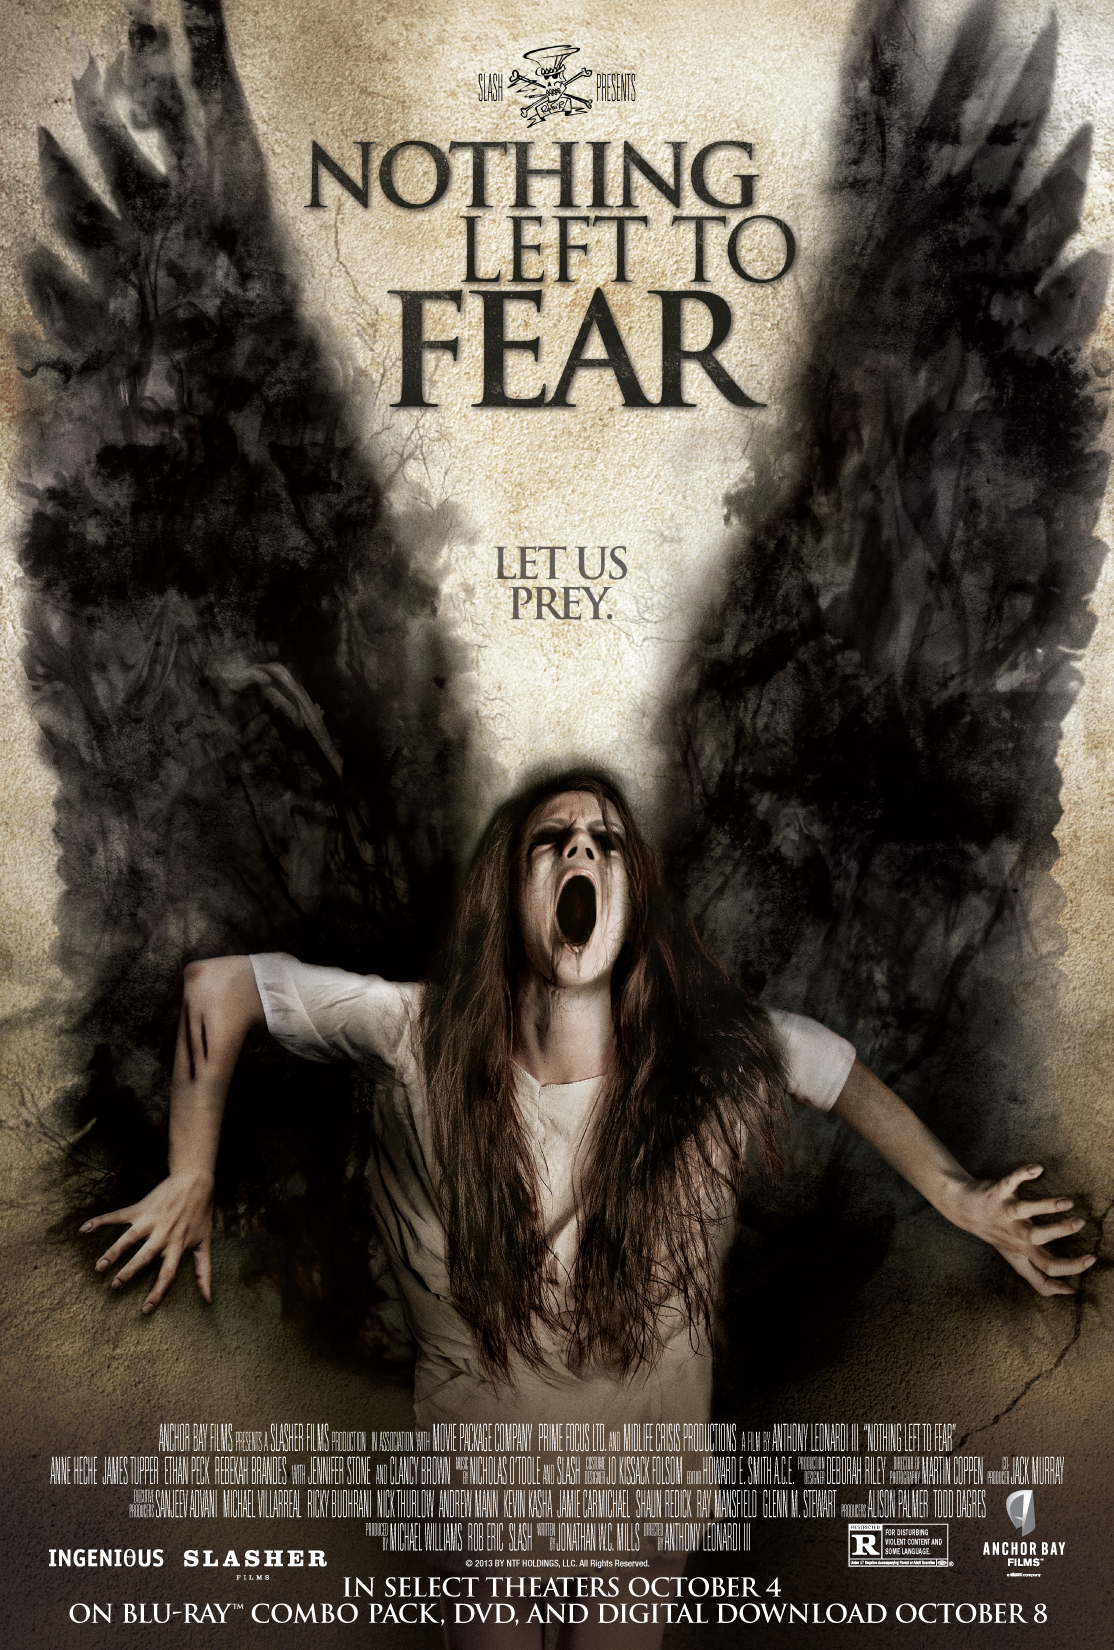 ดูหนังออนไลน์ฟรี Nothing Left to Fear (2013) ไม่เหลืออะไรที่จะต้องกลัว (Soundtrack ซับไทย)